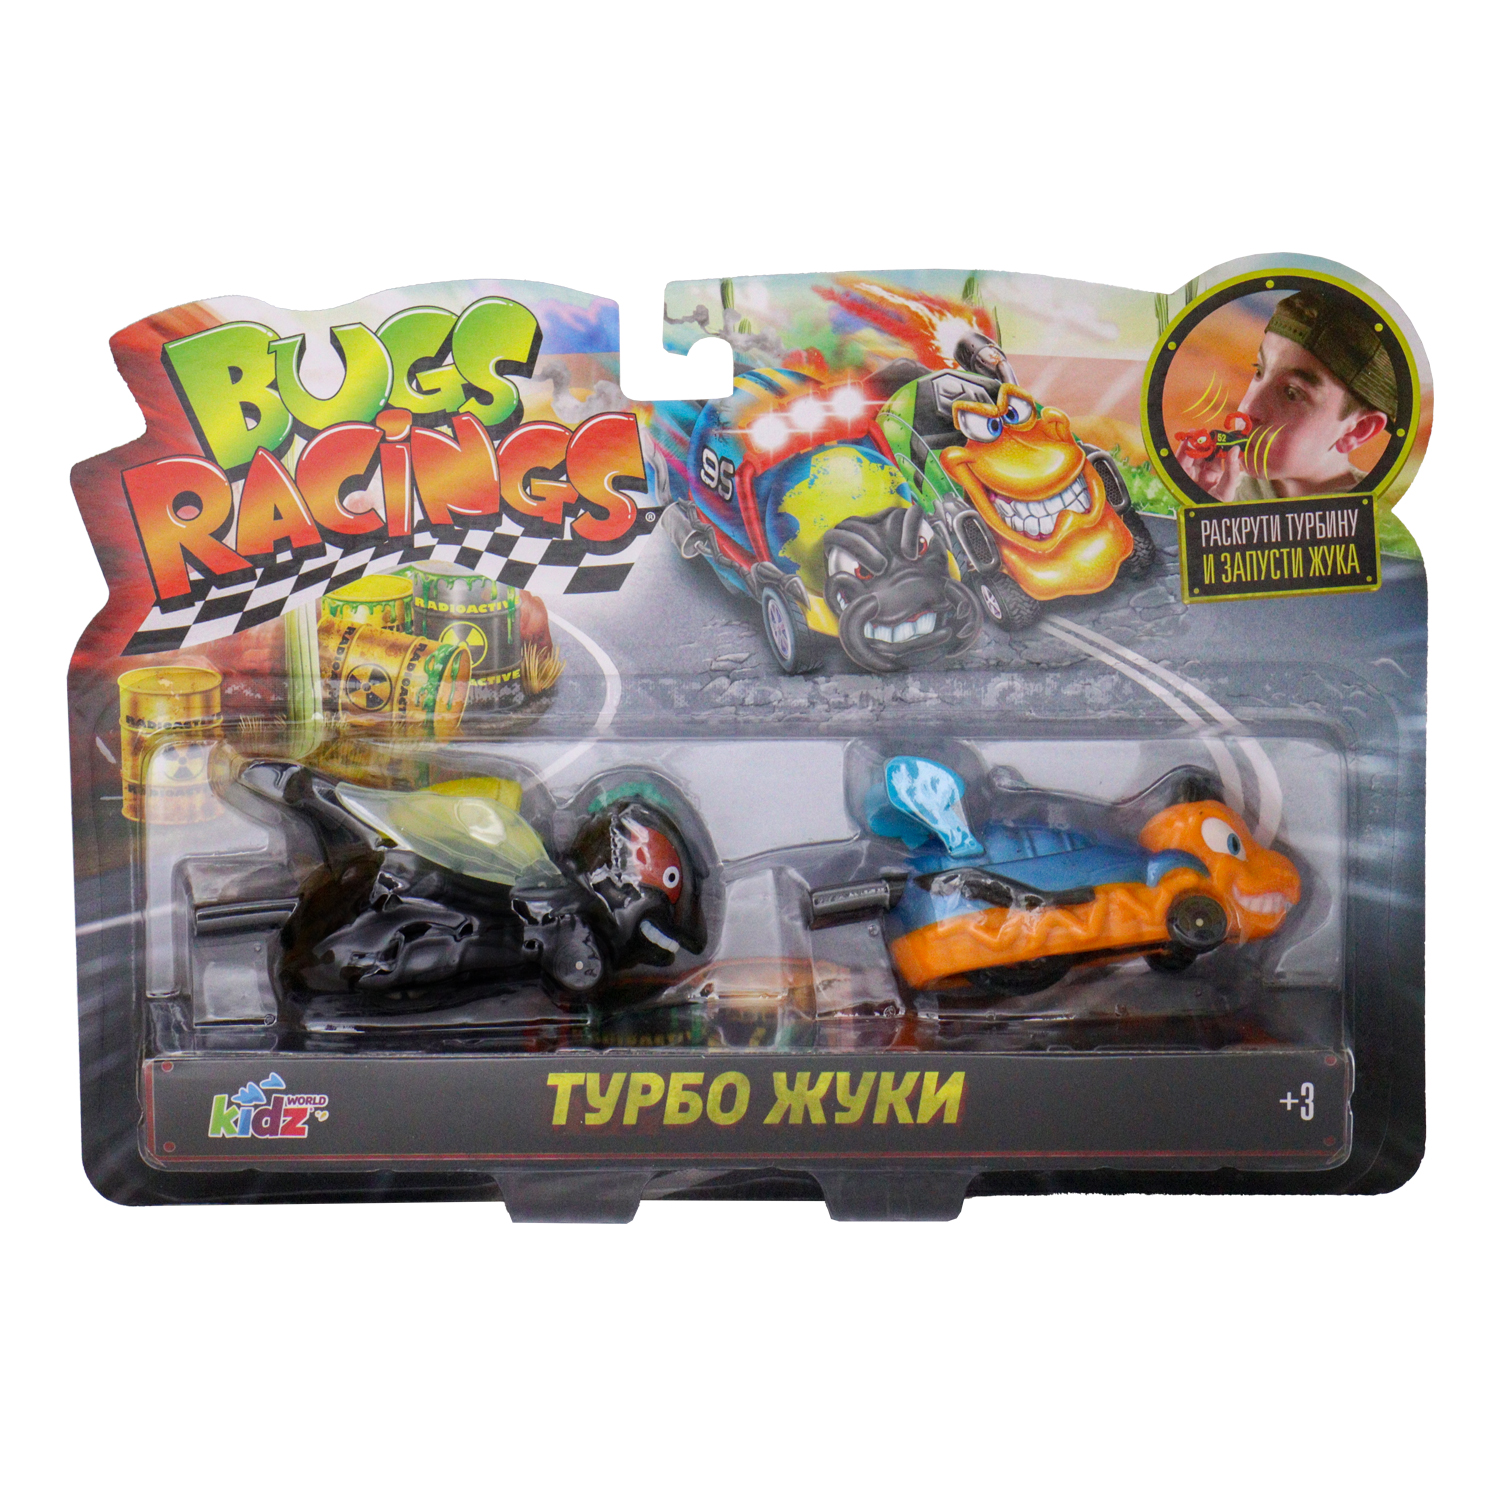 Игровой набор Bugs Racings гонка жуков с 2 машинками черная муха и оранжевая оса K02BR006-3 - фото 5